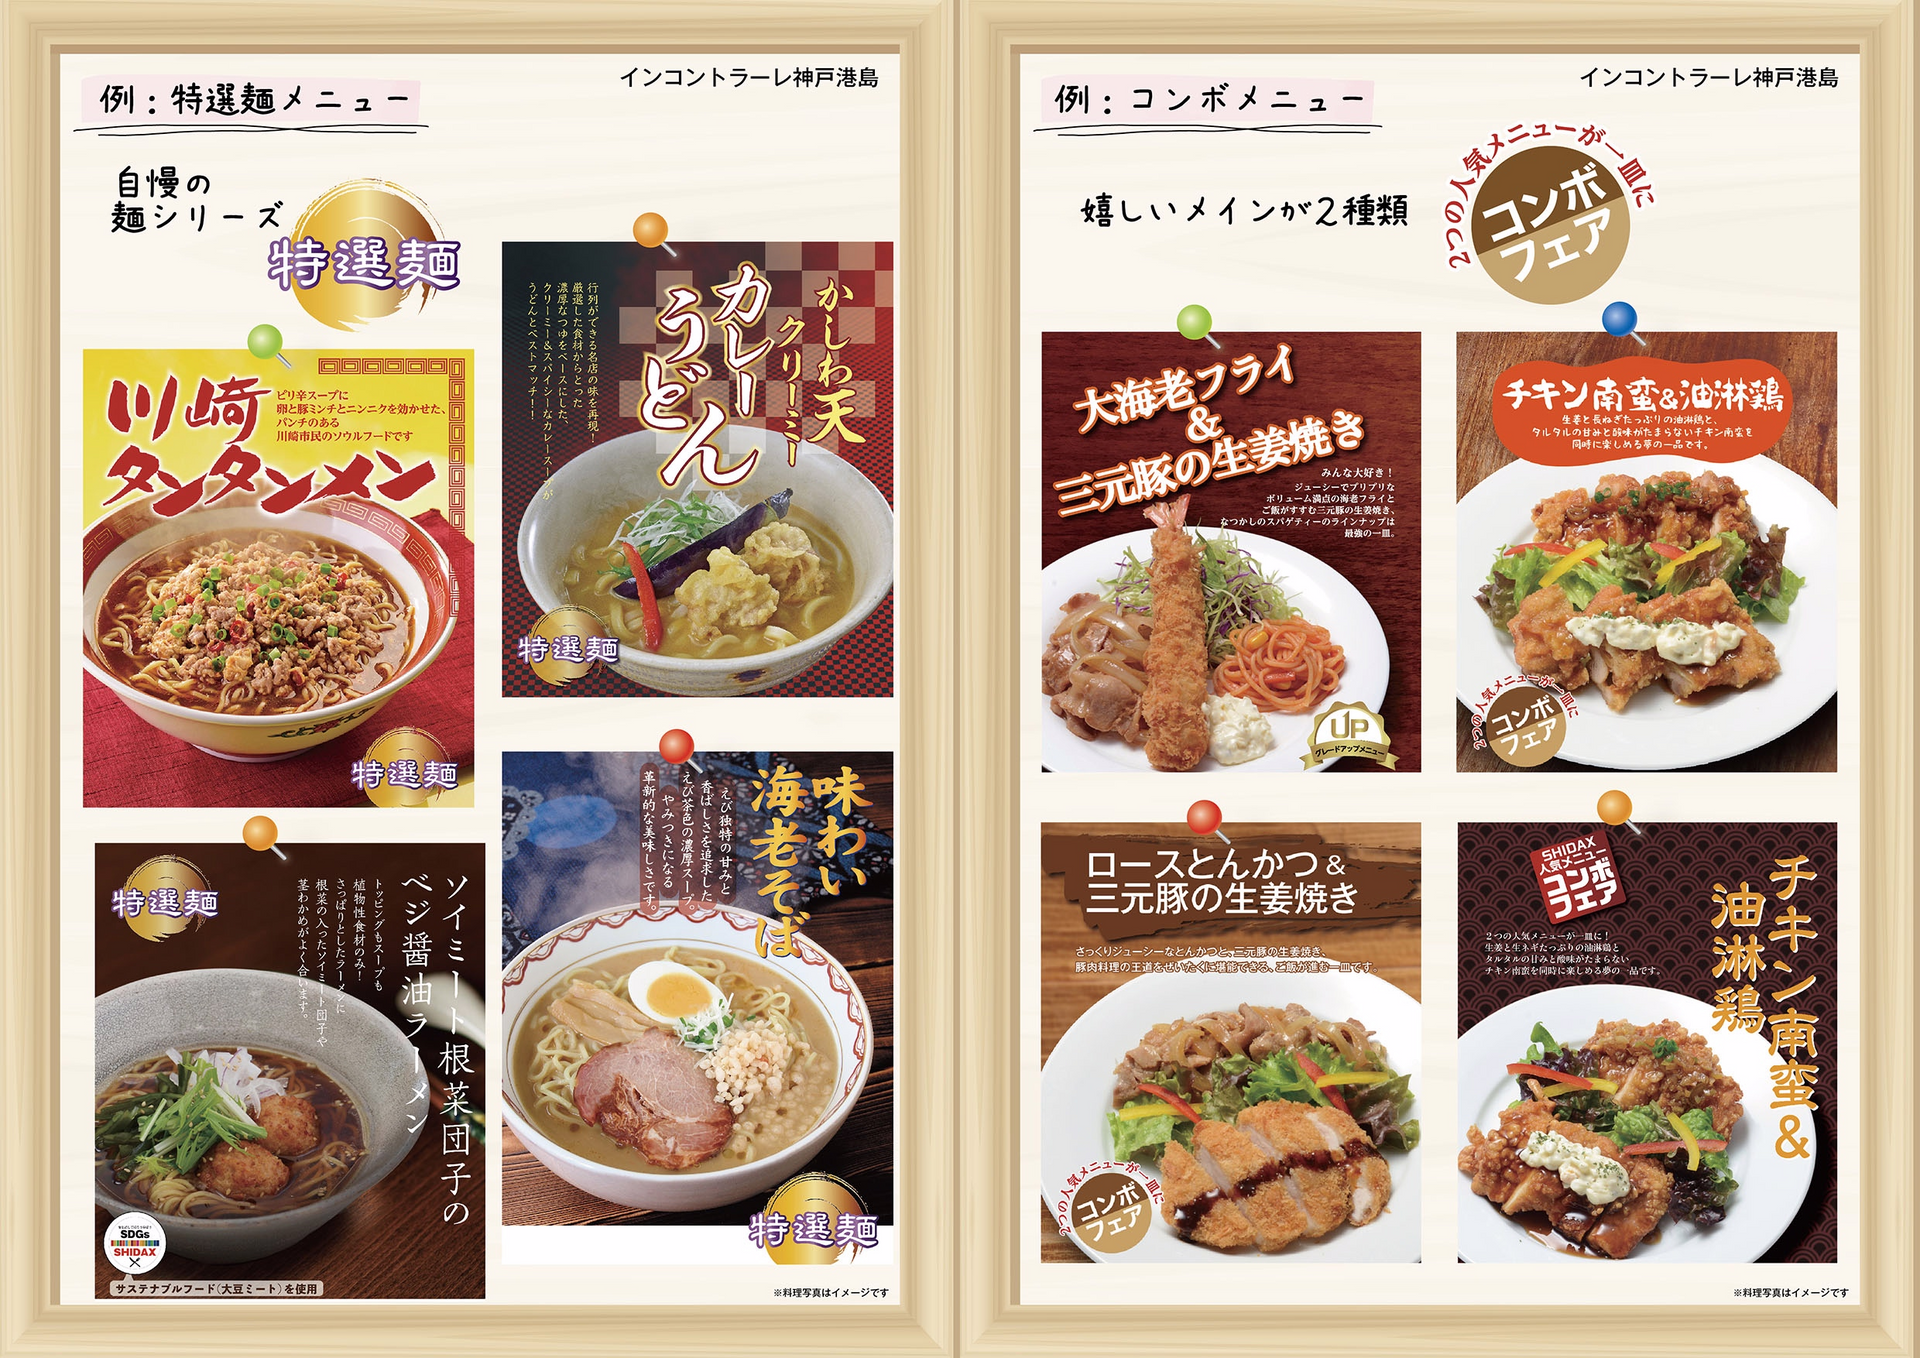 イベントメニュー例。こだわりの特選麺シリーズや、メインのおかずが２種類のコンボメニューのご紹介。